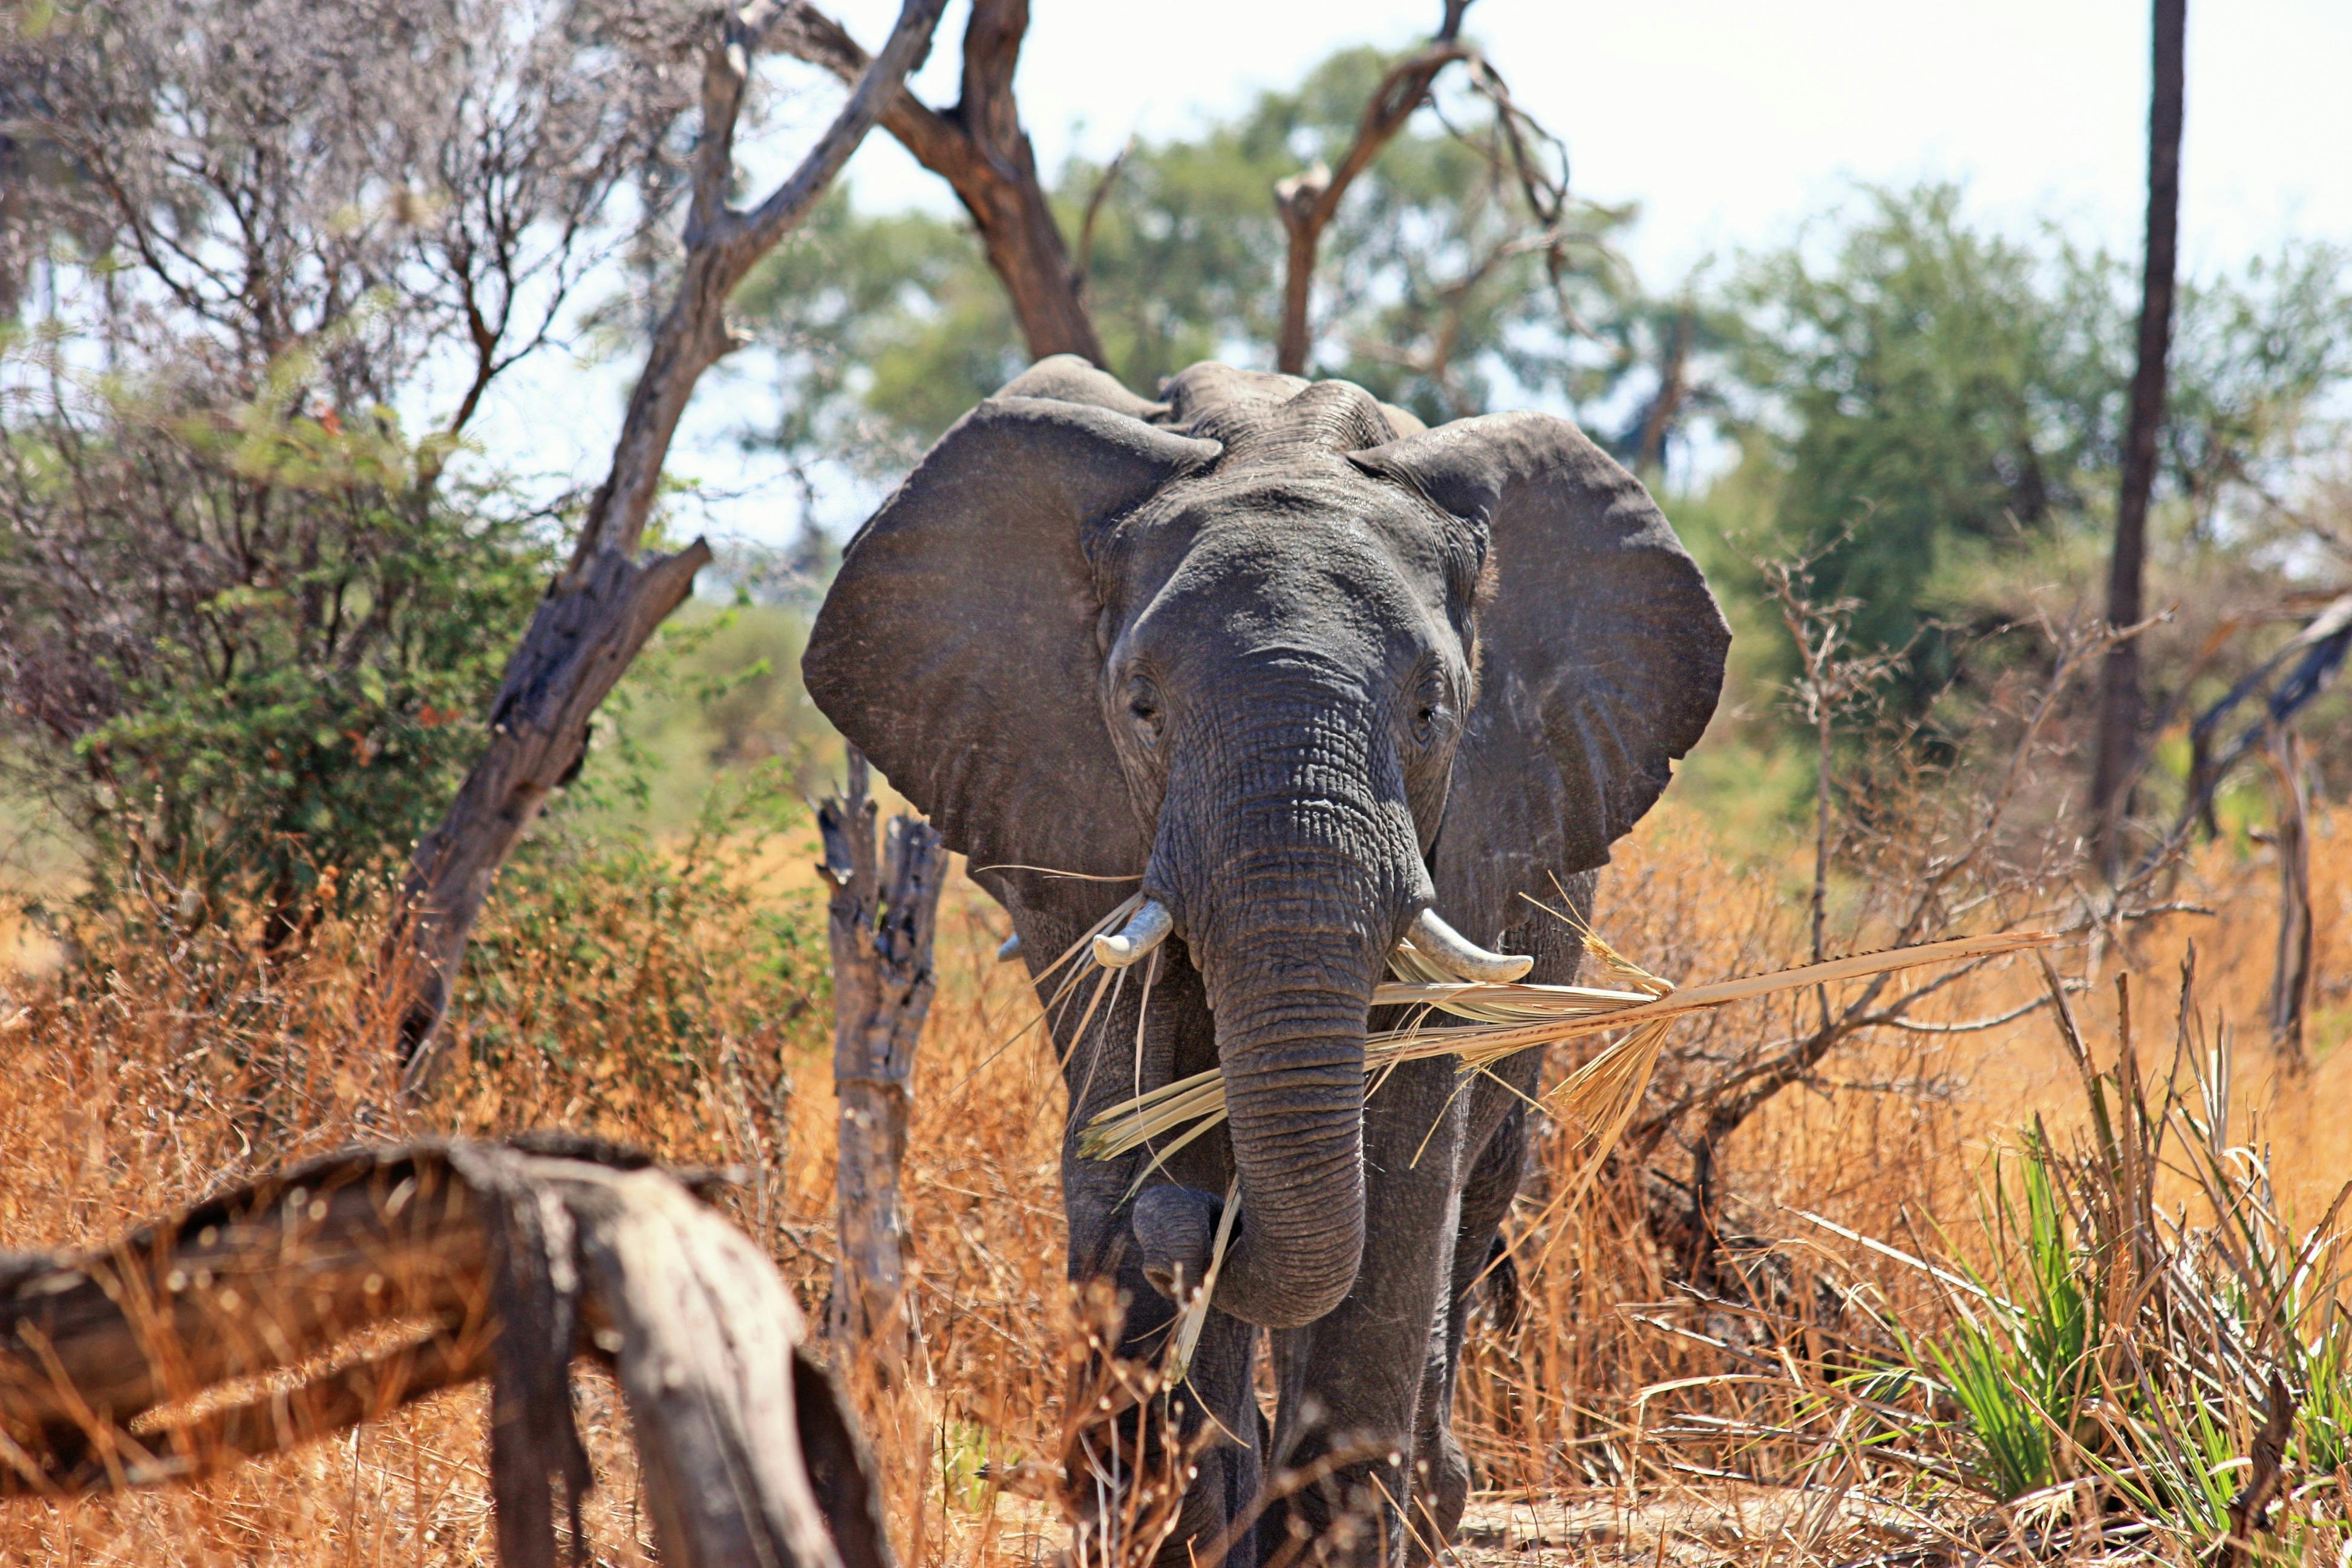  Foto  stok gratis tentang Afrika alam  binatang 